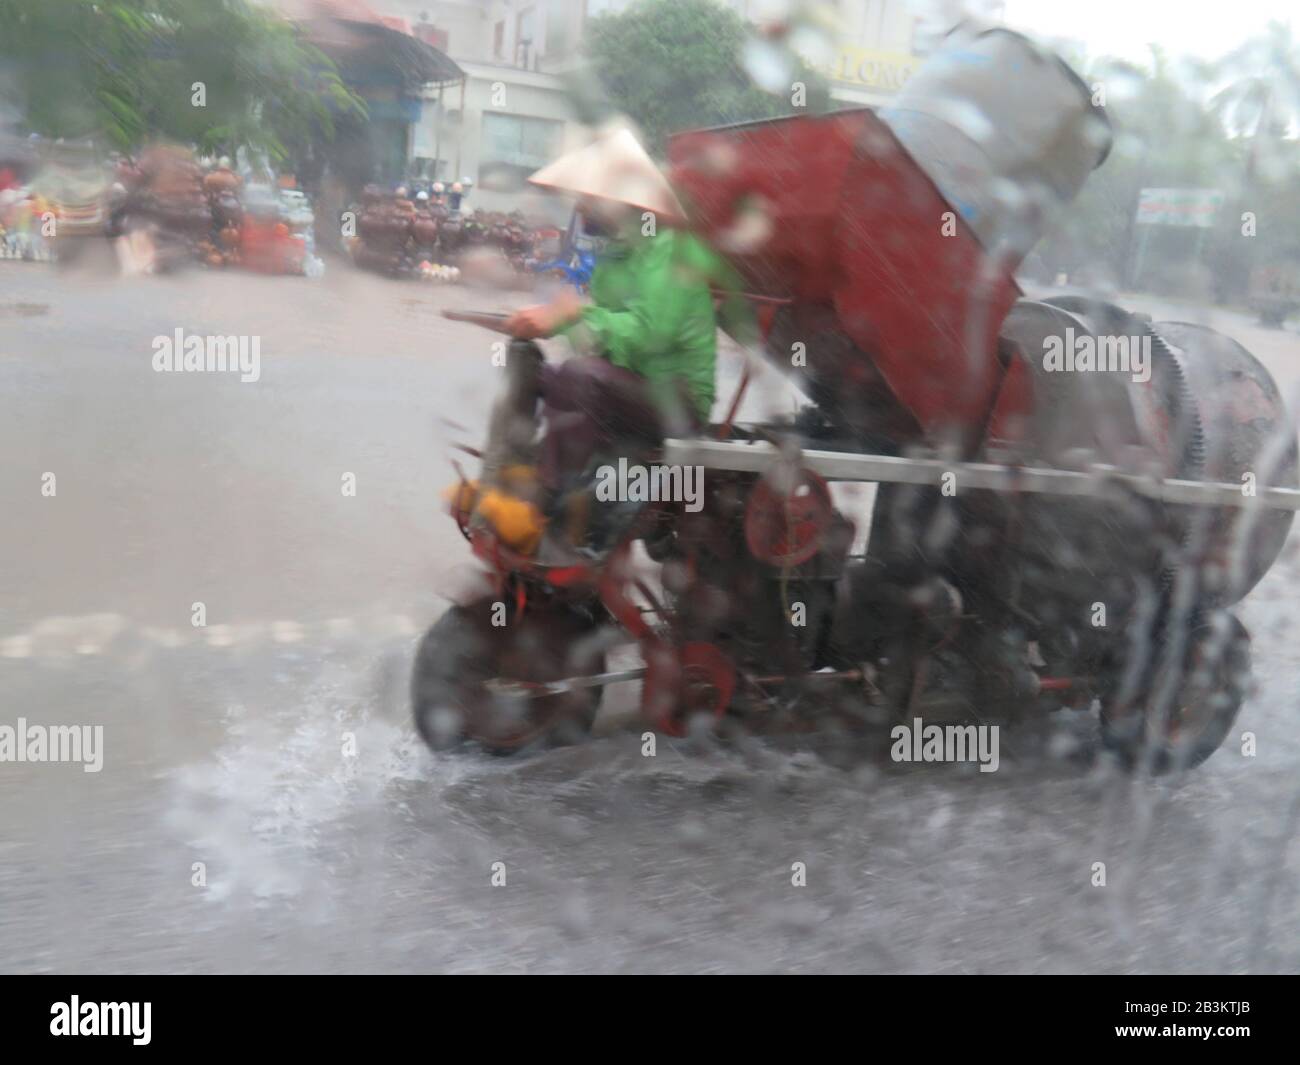 Regen, Betonmischer, Landstrasse Vietnam Foto Stock